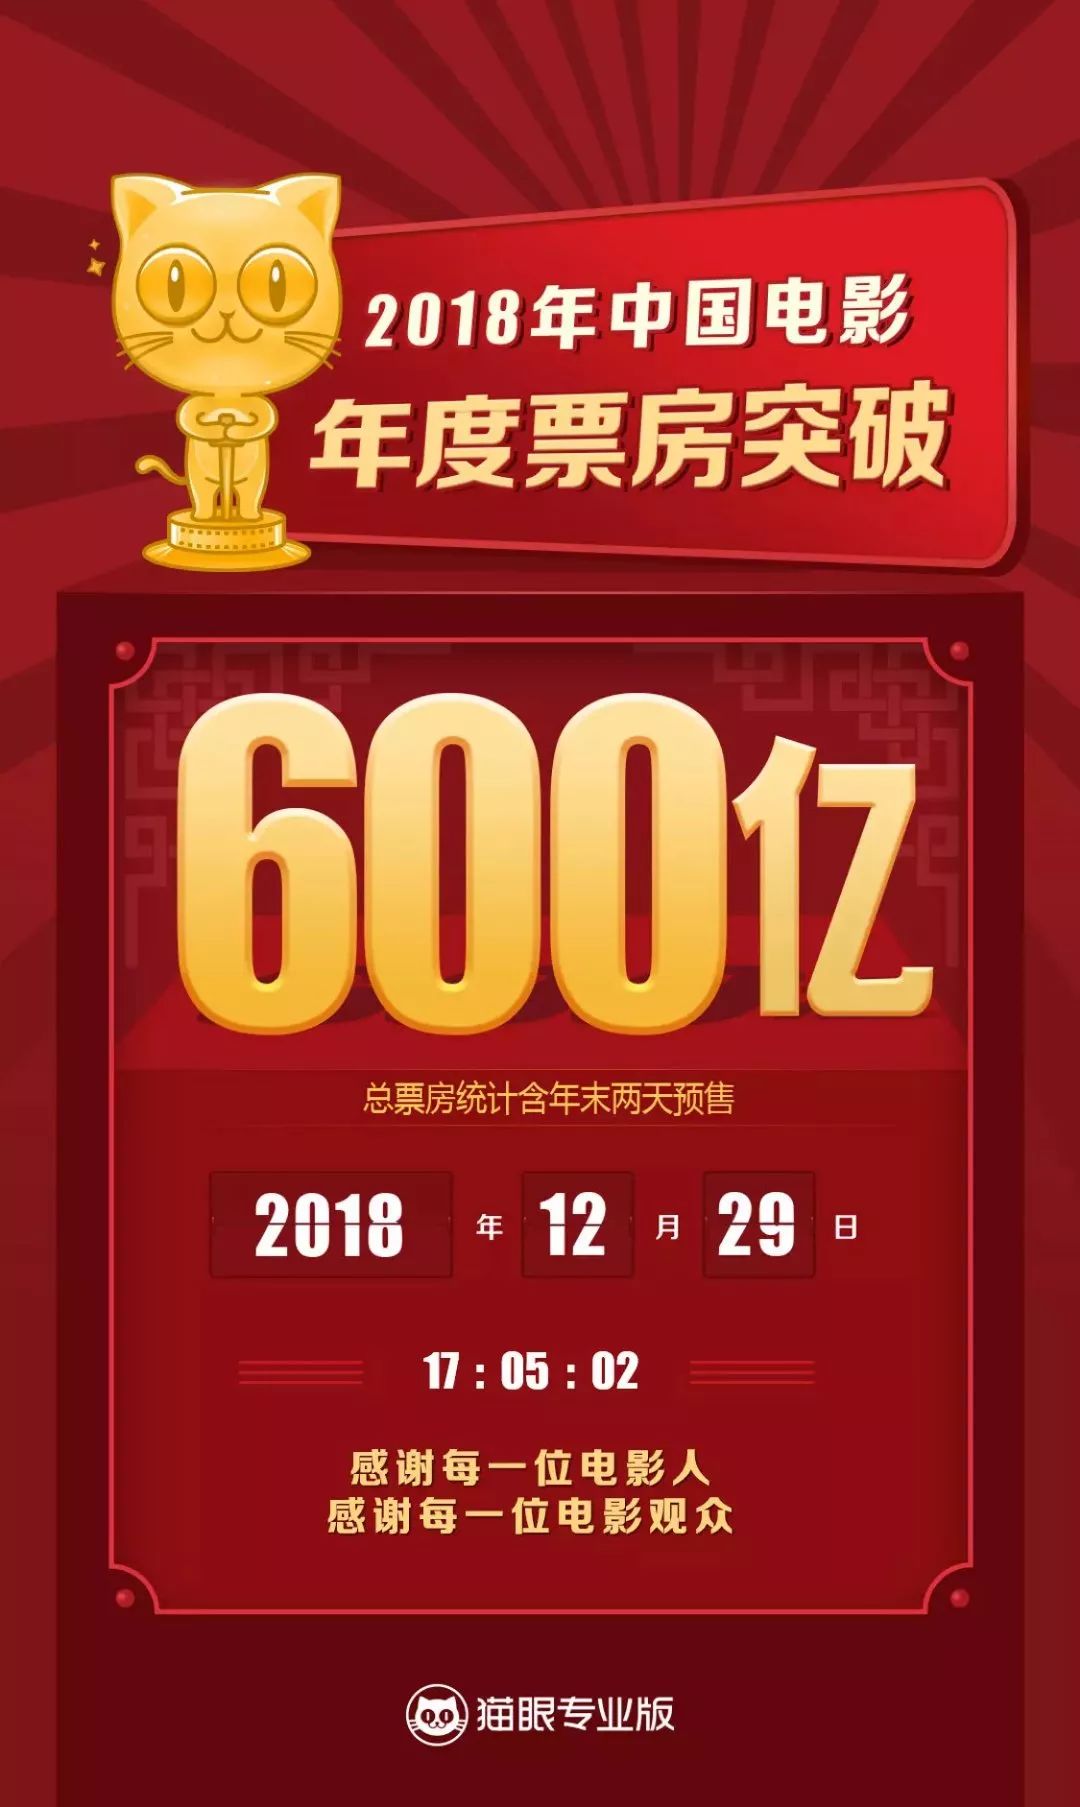 中國電影2018年度票房破600億元大關，新年伊始，我們繼續看起來~